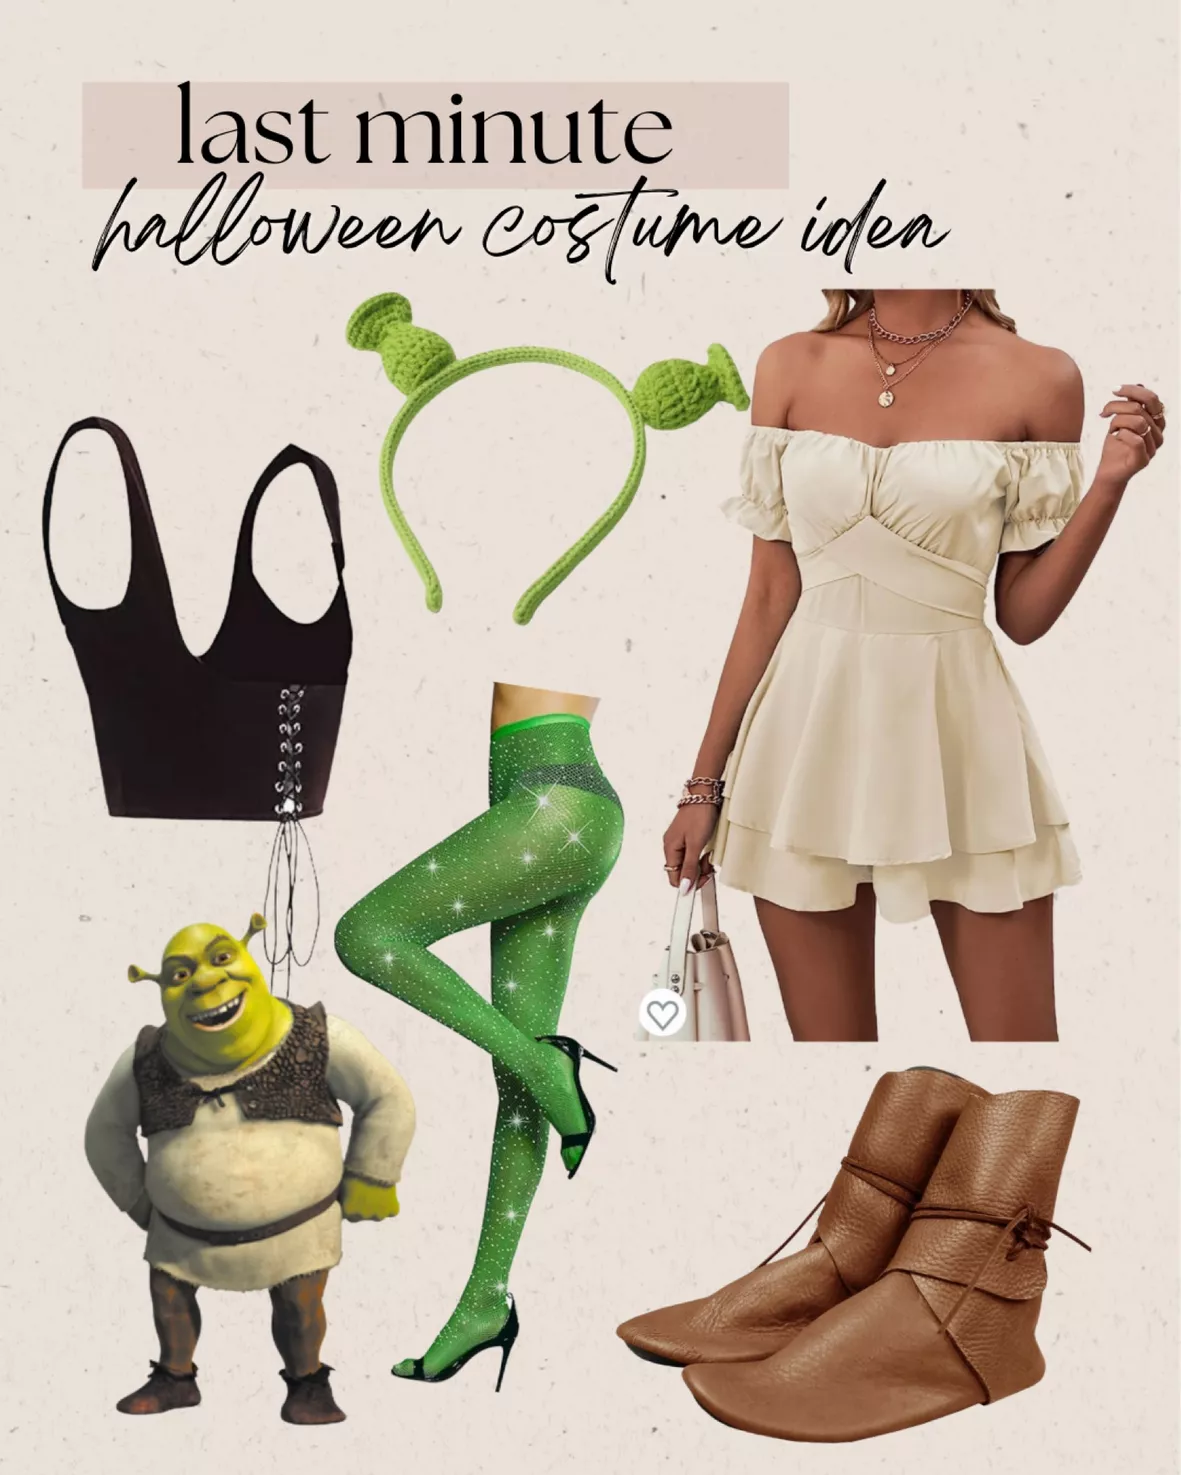 Dress Like Shrek Costume Guide, Diy Shrek Hallowen Costum Guide